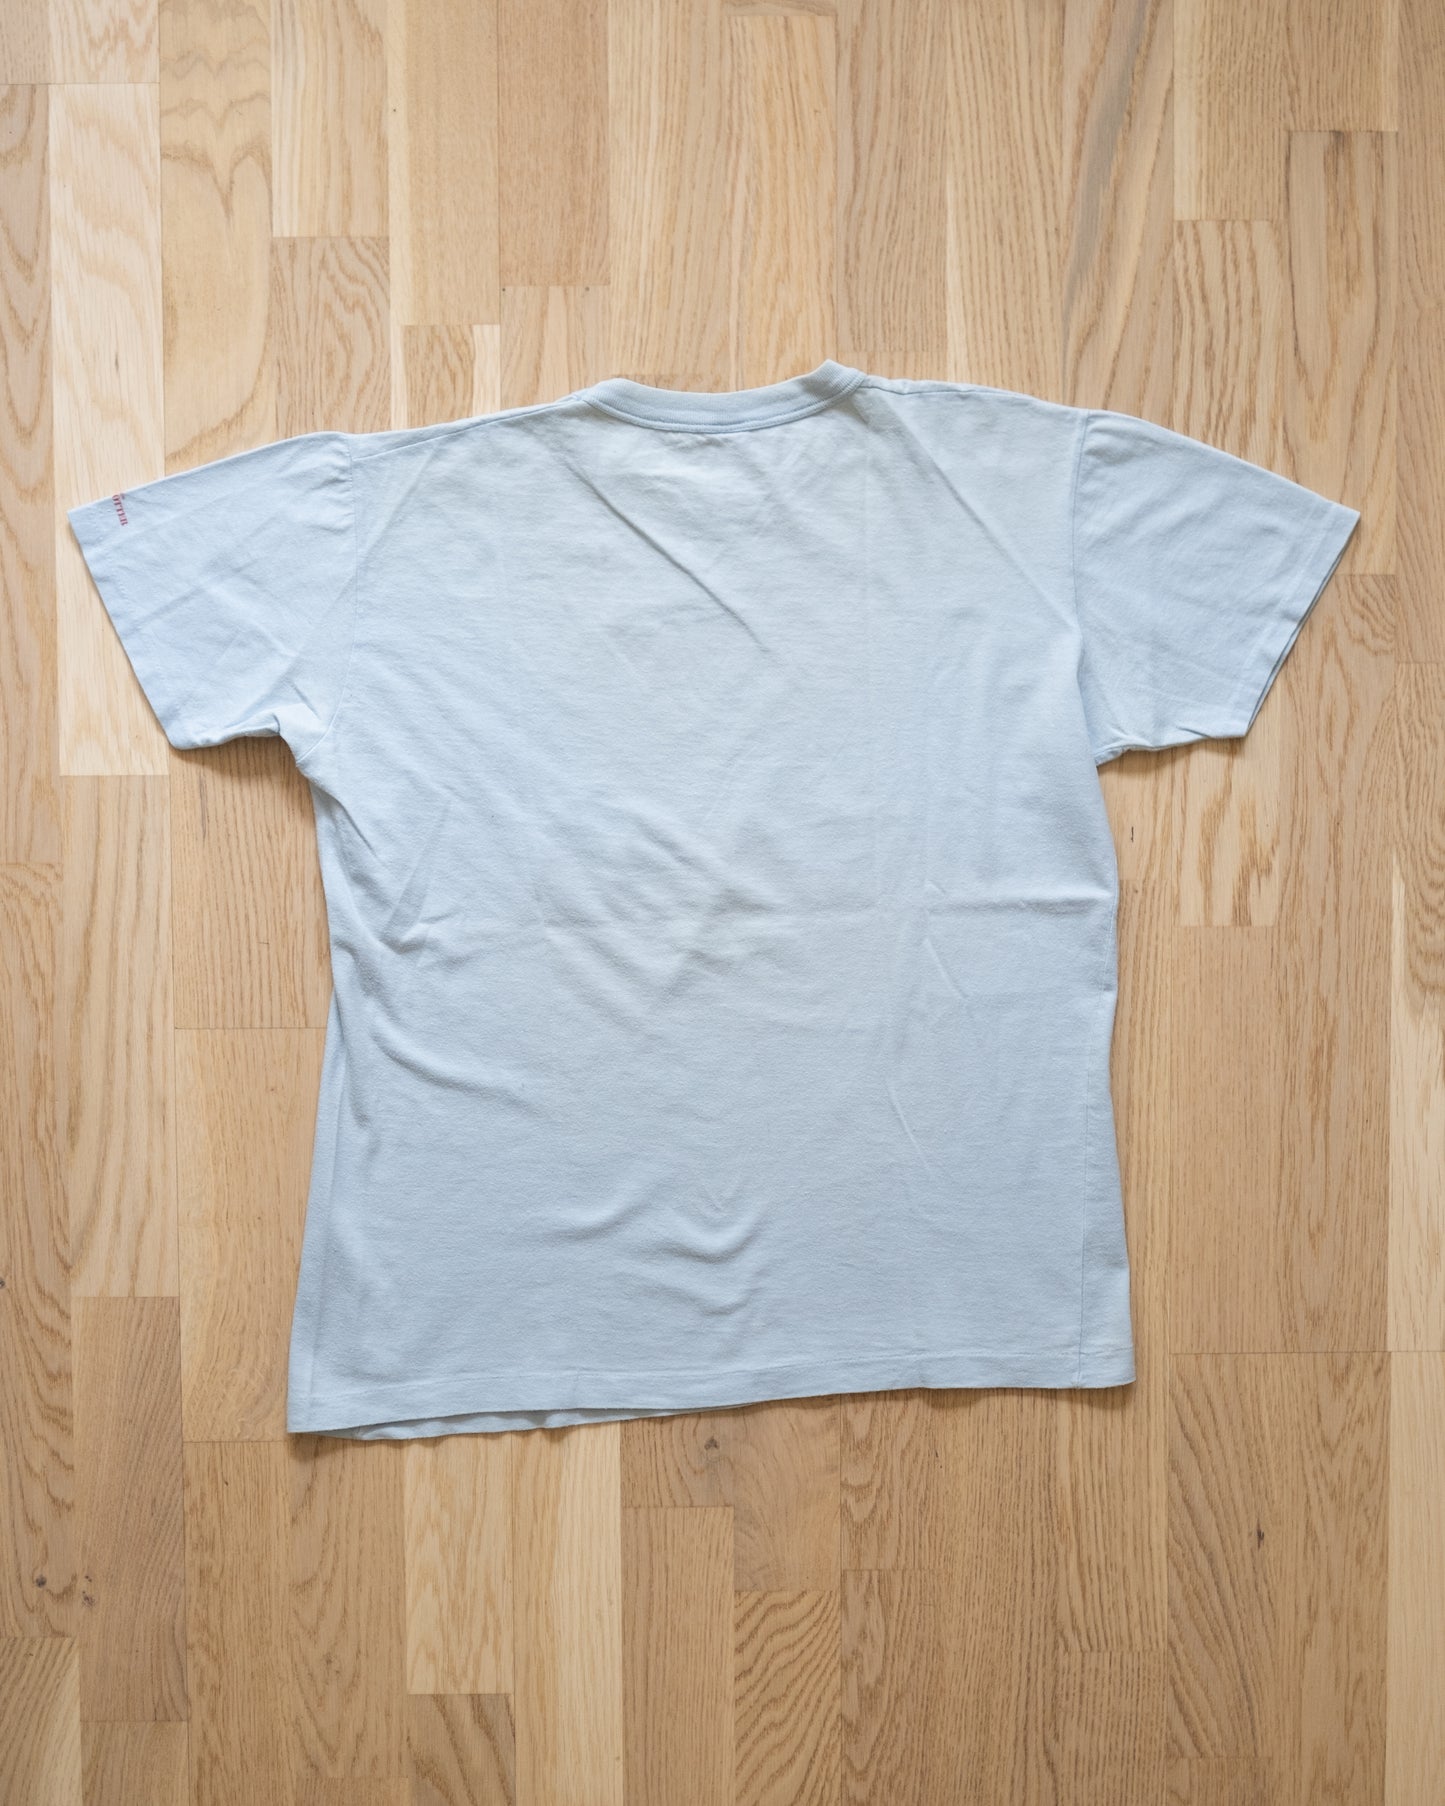 Ven Vintage T-Shirt Size M